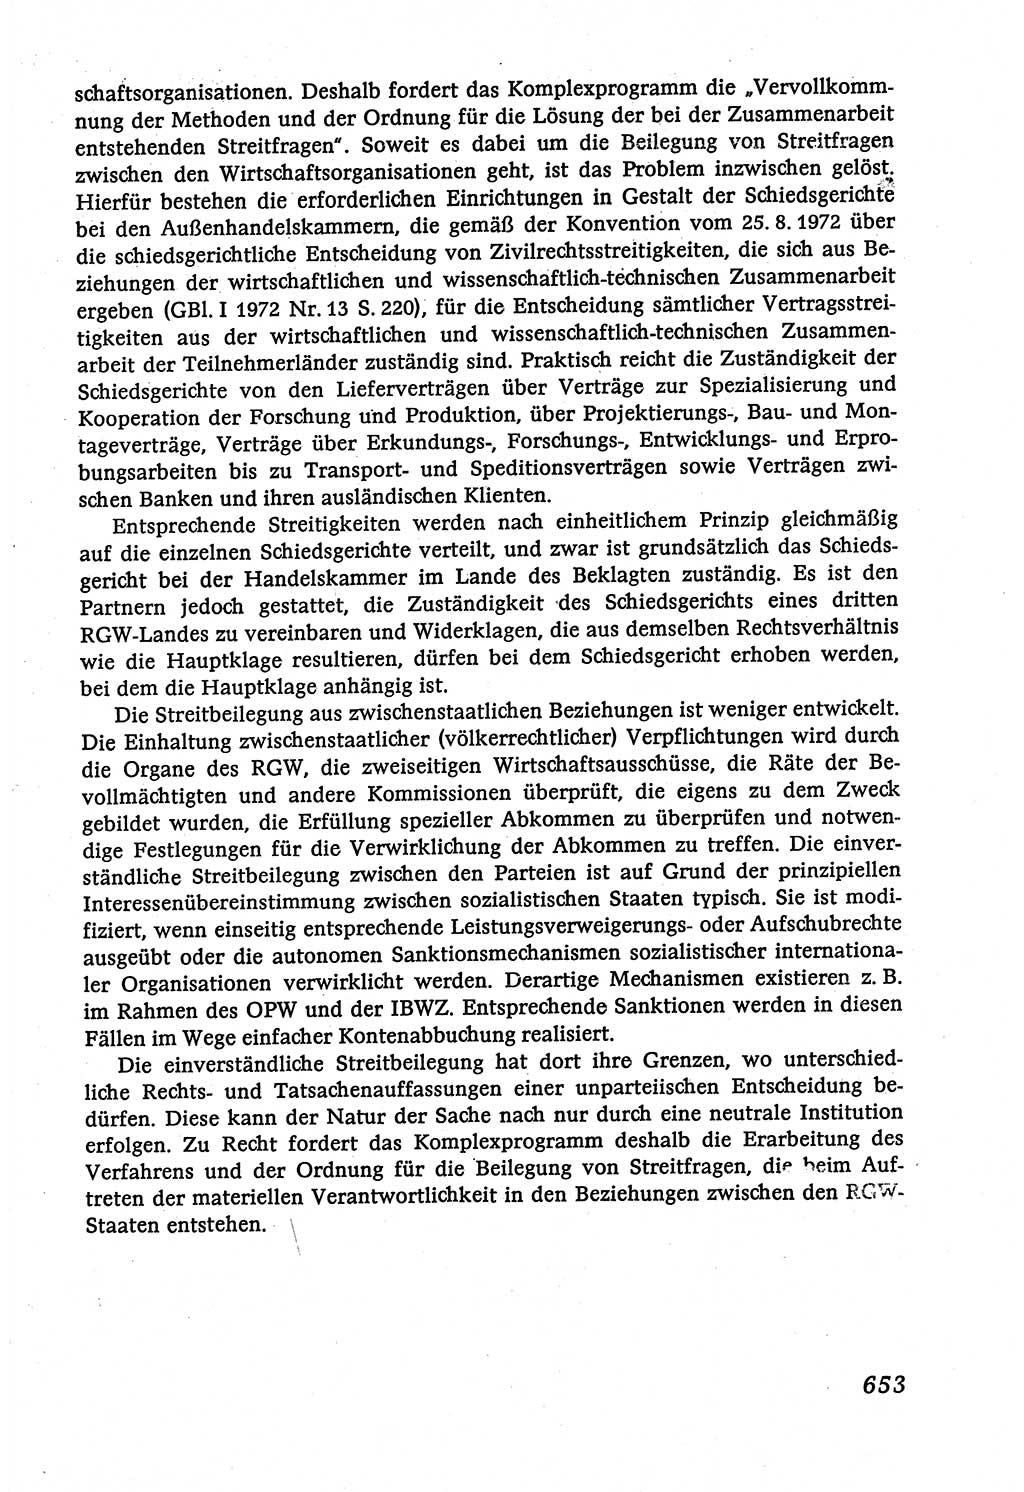 Marxistisch-leninistische (ML) Staats- und Rechtstheorie [Deutsche Demokratische Republik (DDR)], Lehrbuch 1980, Seite 653 (ML St.-R.-Th. DDR Lb. 1980, S. 653)